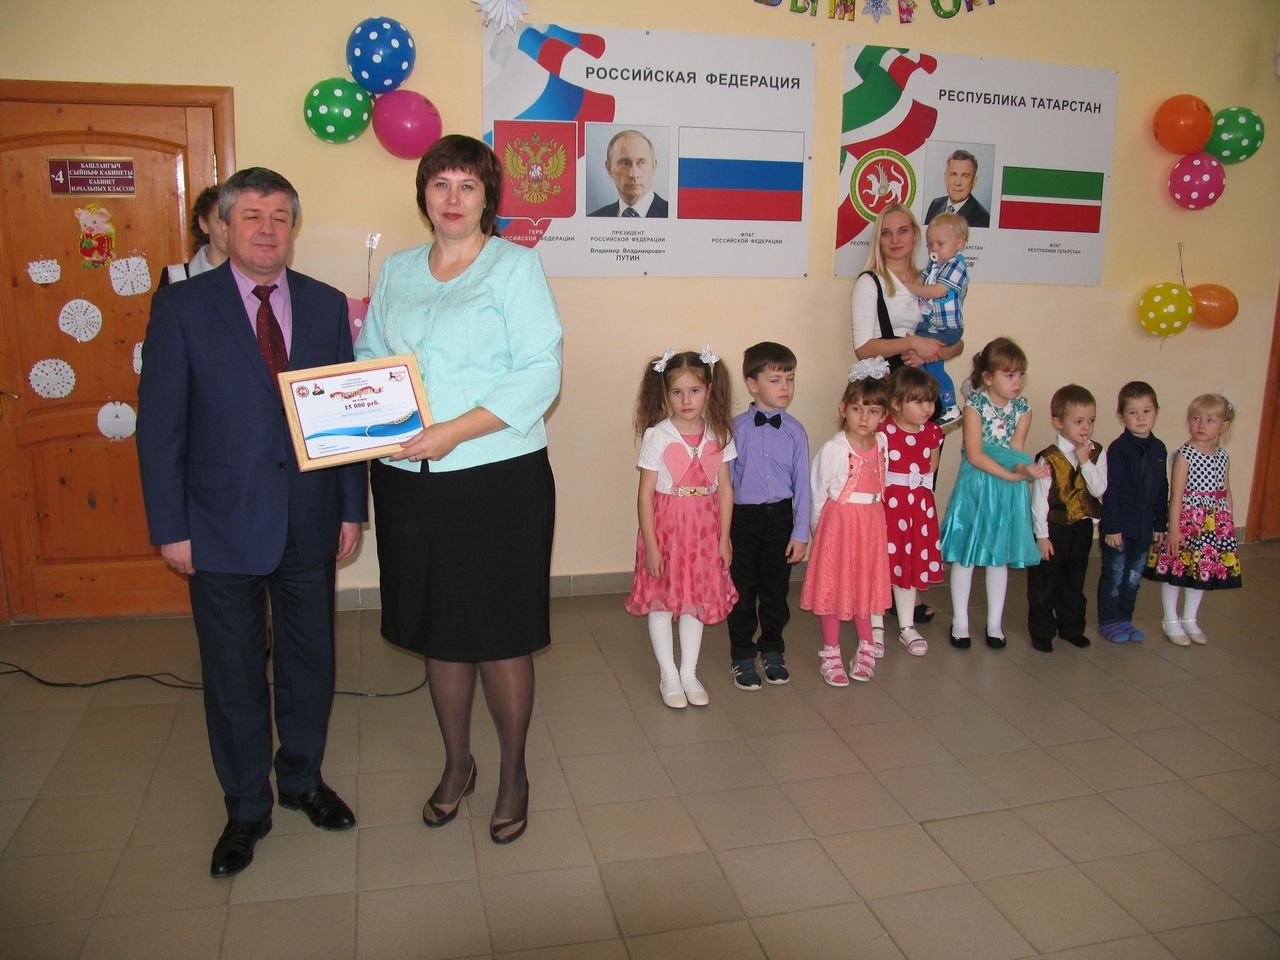 Фоторепортаж: В селе Ромодан Алексеевского района перевели детский сад в здание школы